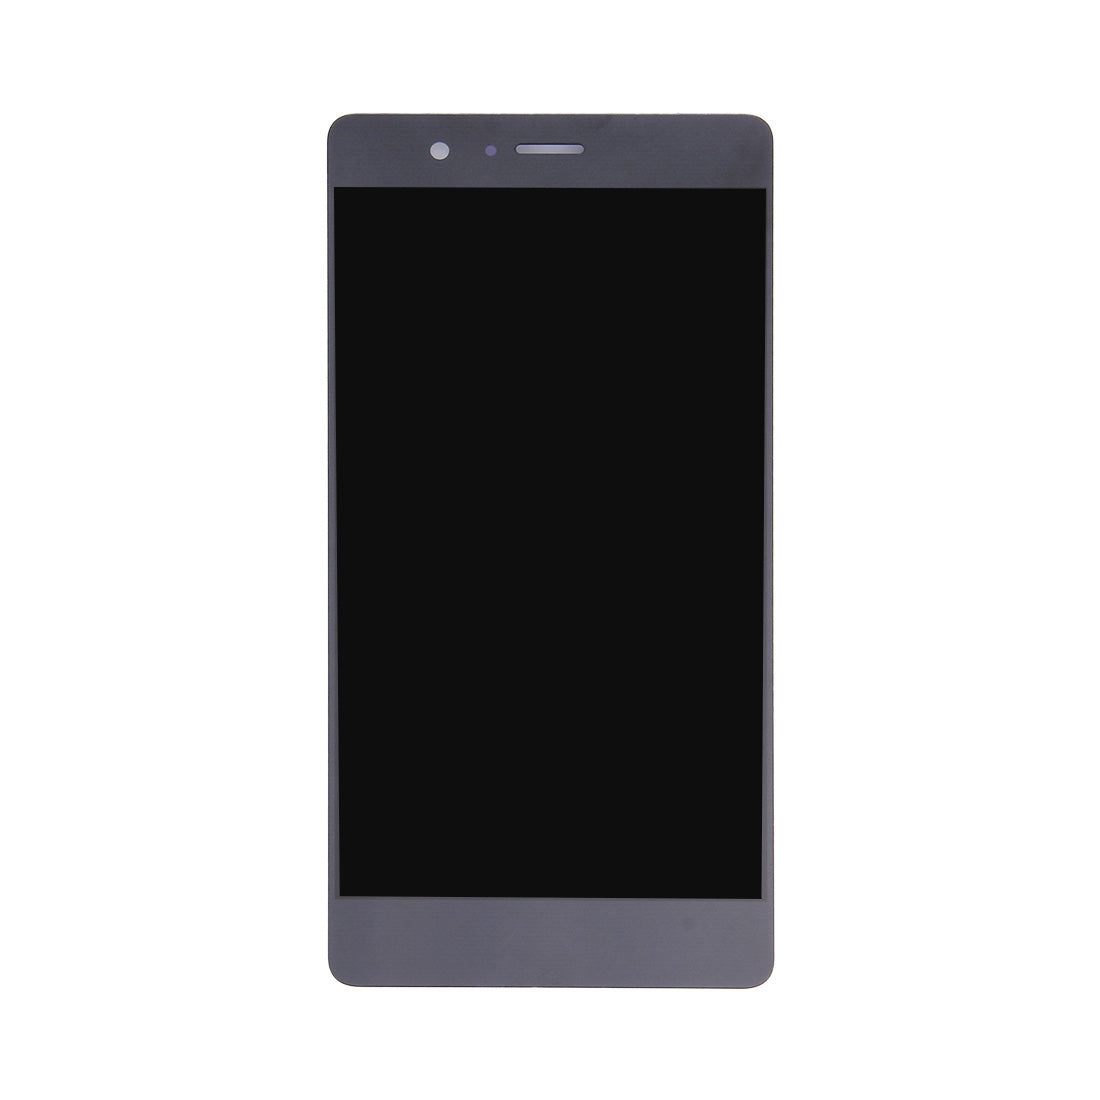 Pantalla LCD + Tactil Digitalizador Huawei P9 Lite Negro